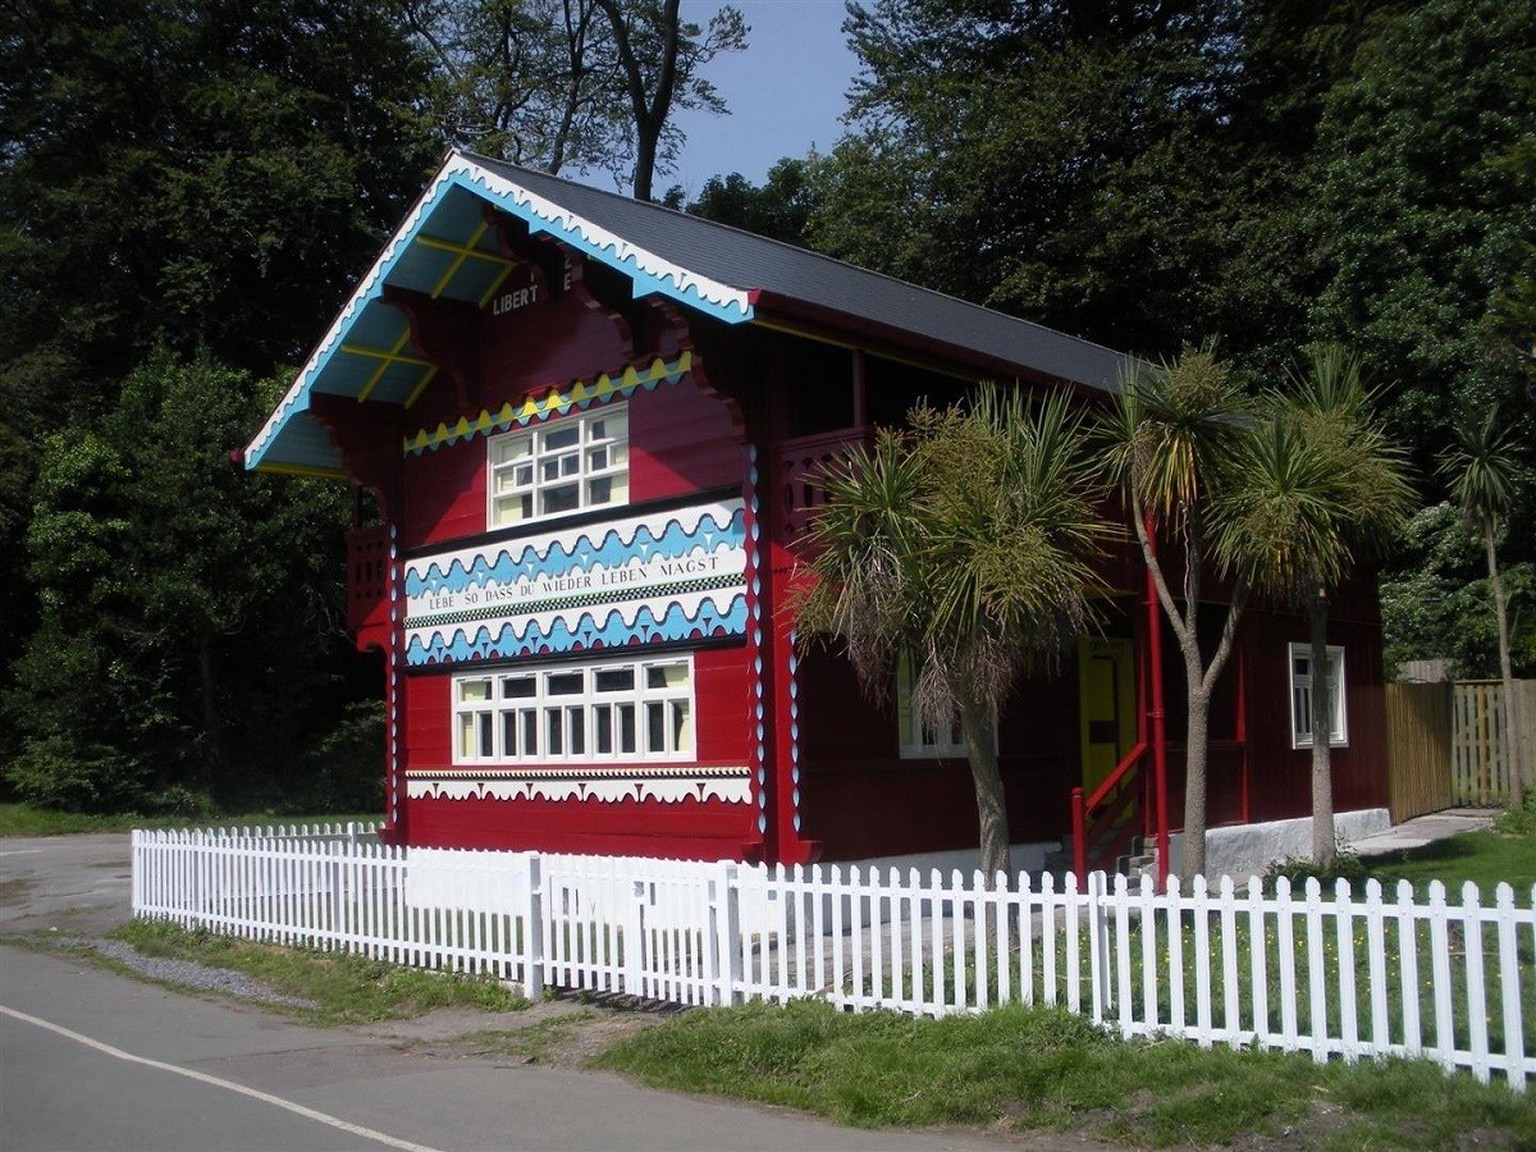 Un chalet au pays de Galles: le Swiss Cottage du parc de Singleton (Swansea, Royaume-Uni), construit par Peter Frederick Robinson après son voyage en Suisse.
https://www.swansea.gov.uk/toletswisscotta ...